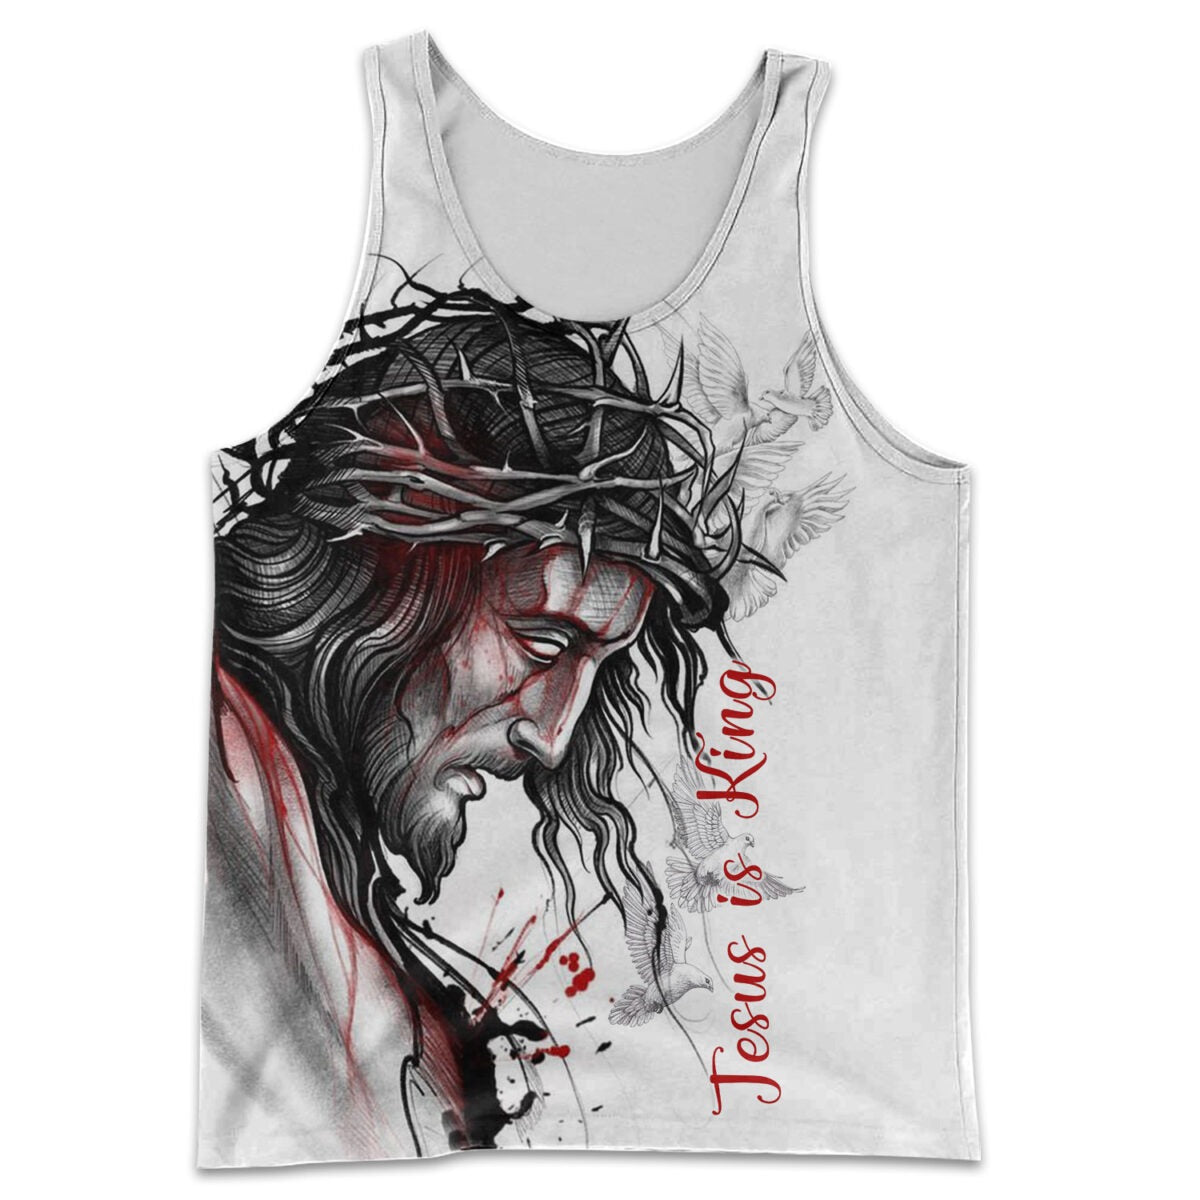 Jesus Is King 3D All Over Print T Shirt/ 3D Jesus Hoodie/ Jesus Clothings